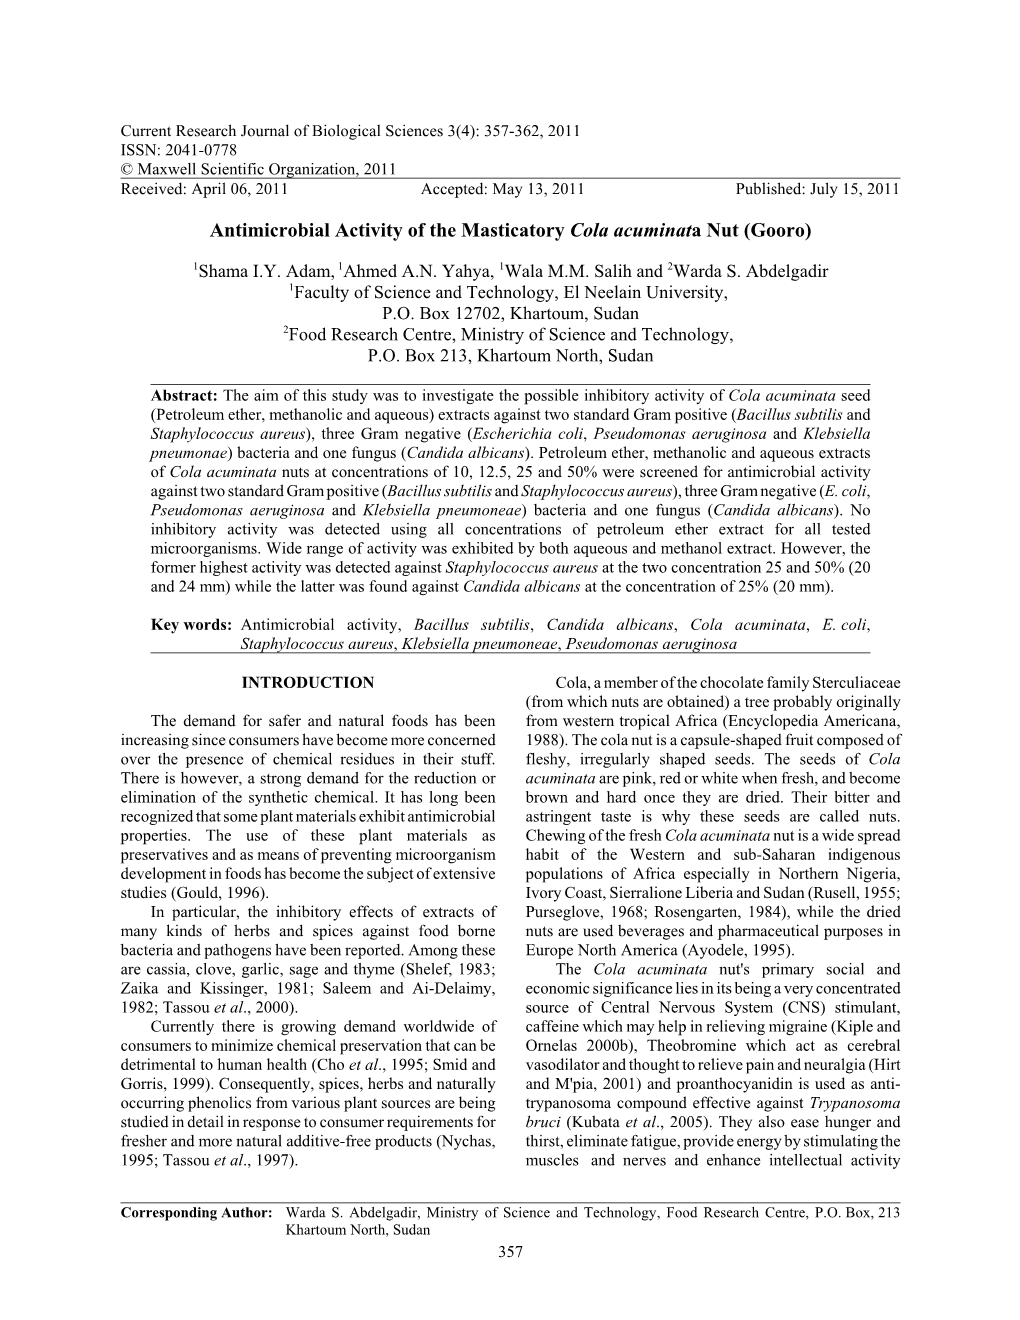 Antimicrobial Activity of the Masticatory Cola Acuminata Nut (Gooro)